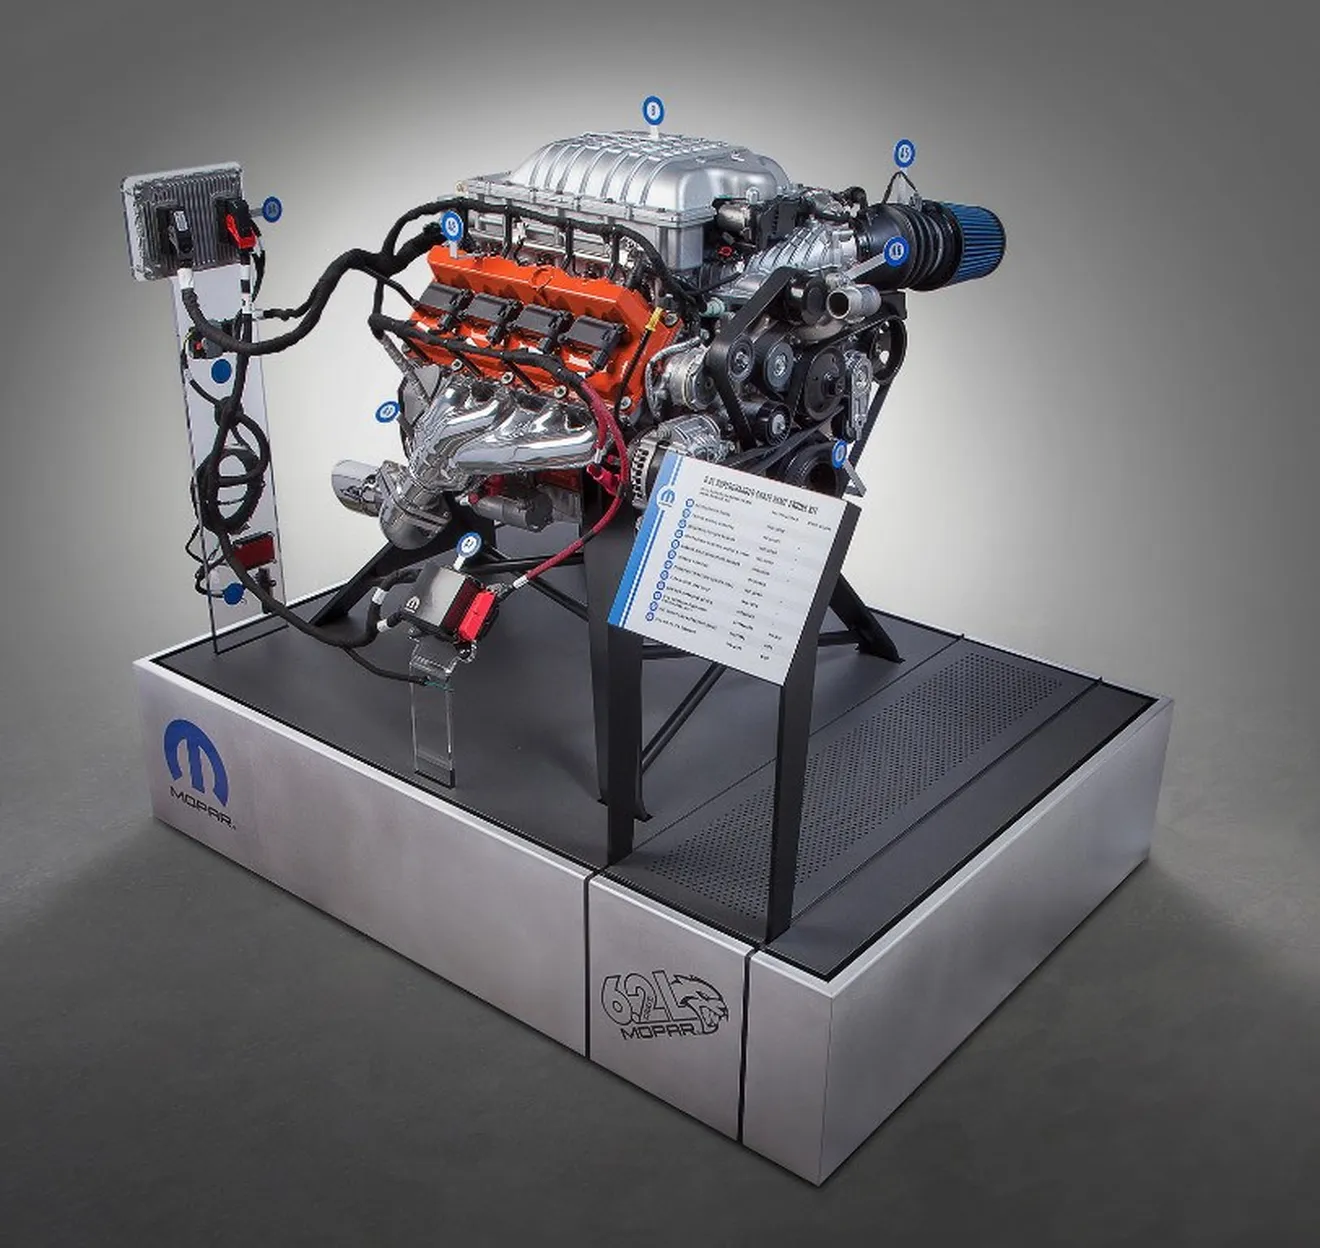 Ya puedes meter el V8 Hellcat de 717 CV a cualquier modelo por 19.500 dólares